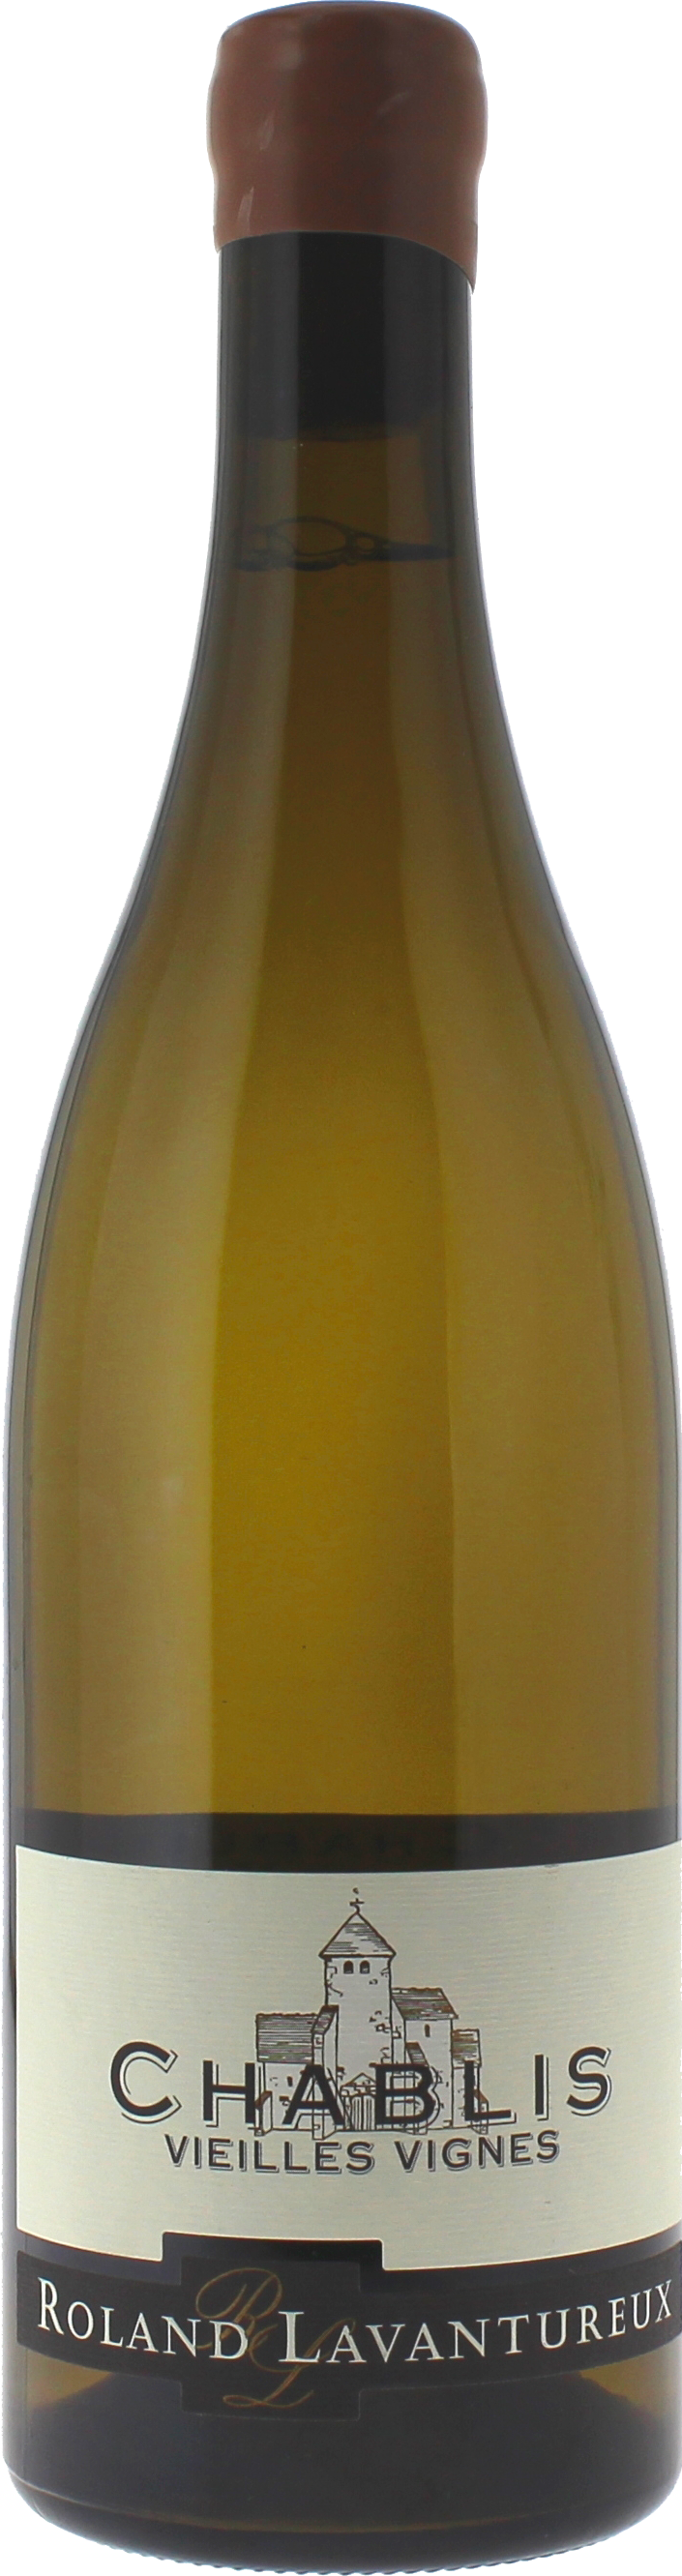 Chablis vieilles vignes 2019  LAVANTUREUX Roland, Bourgogne blanc